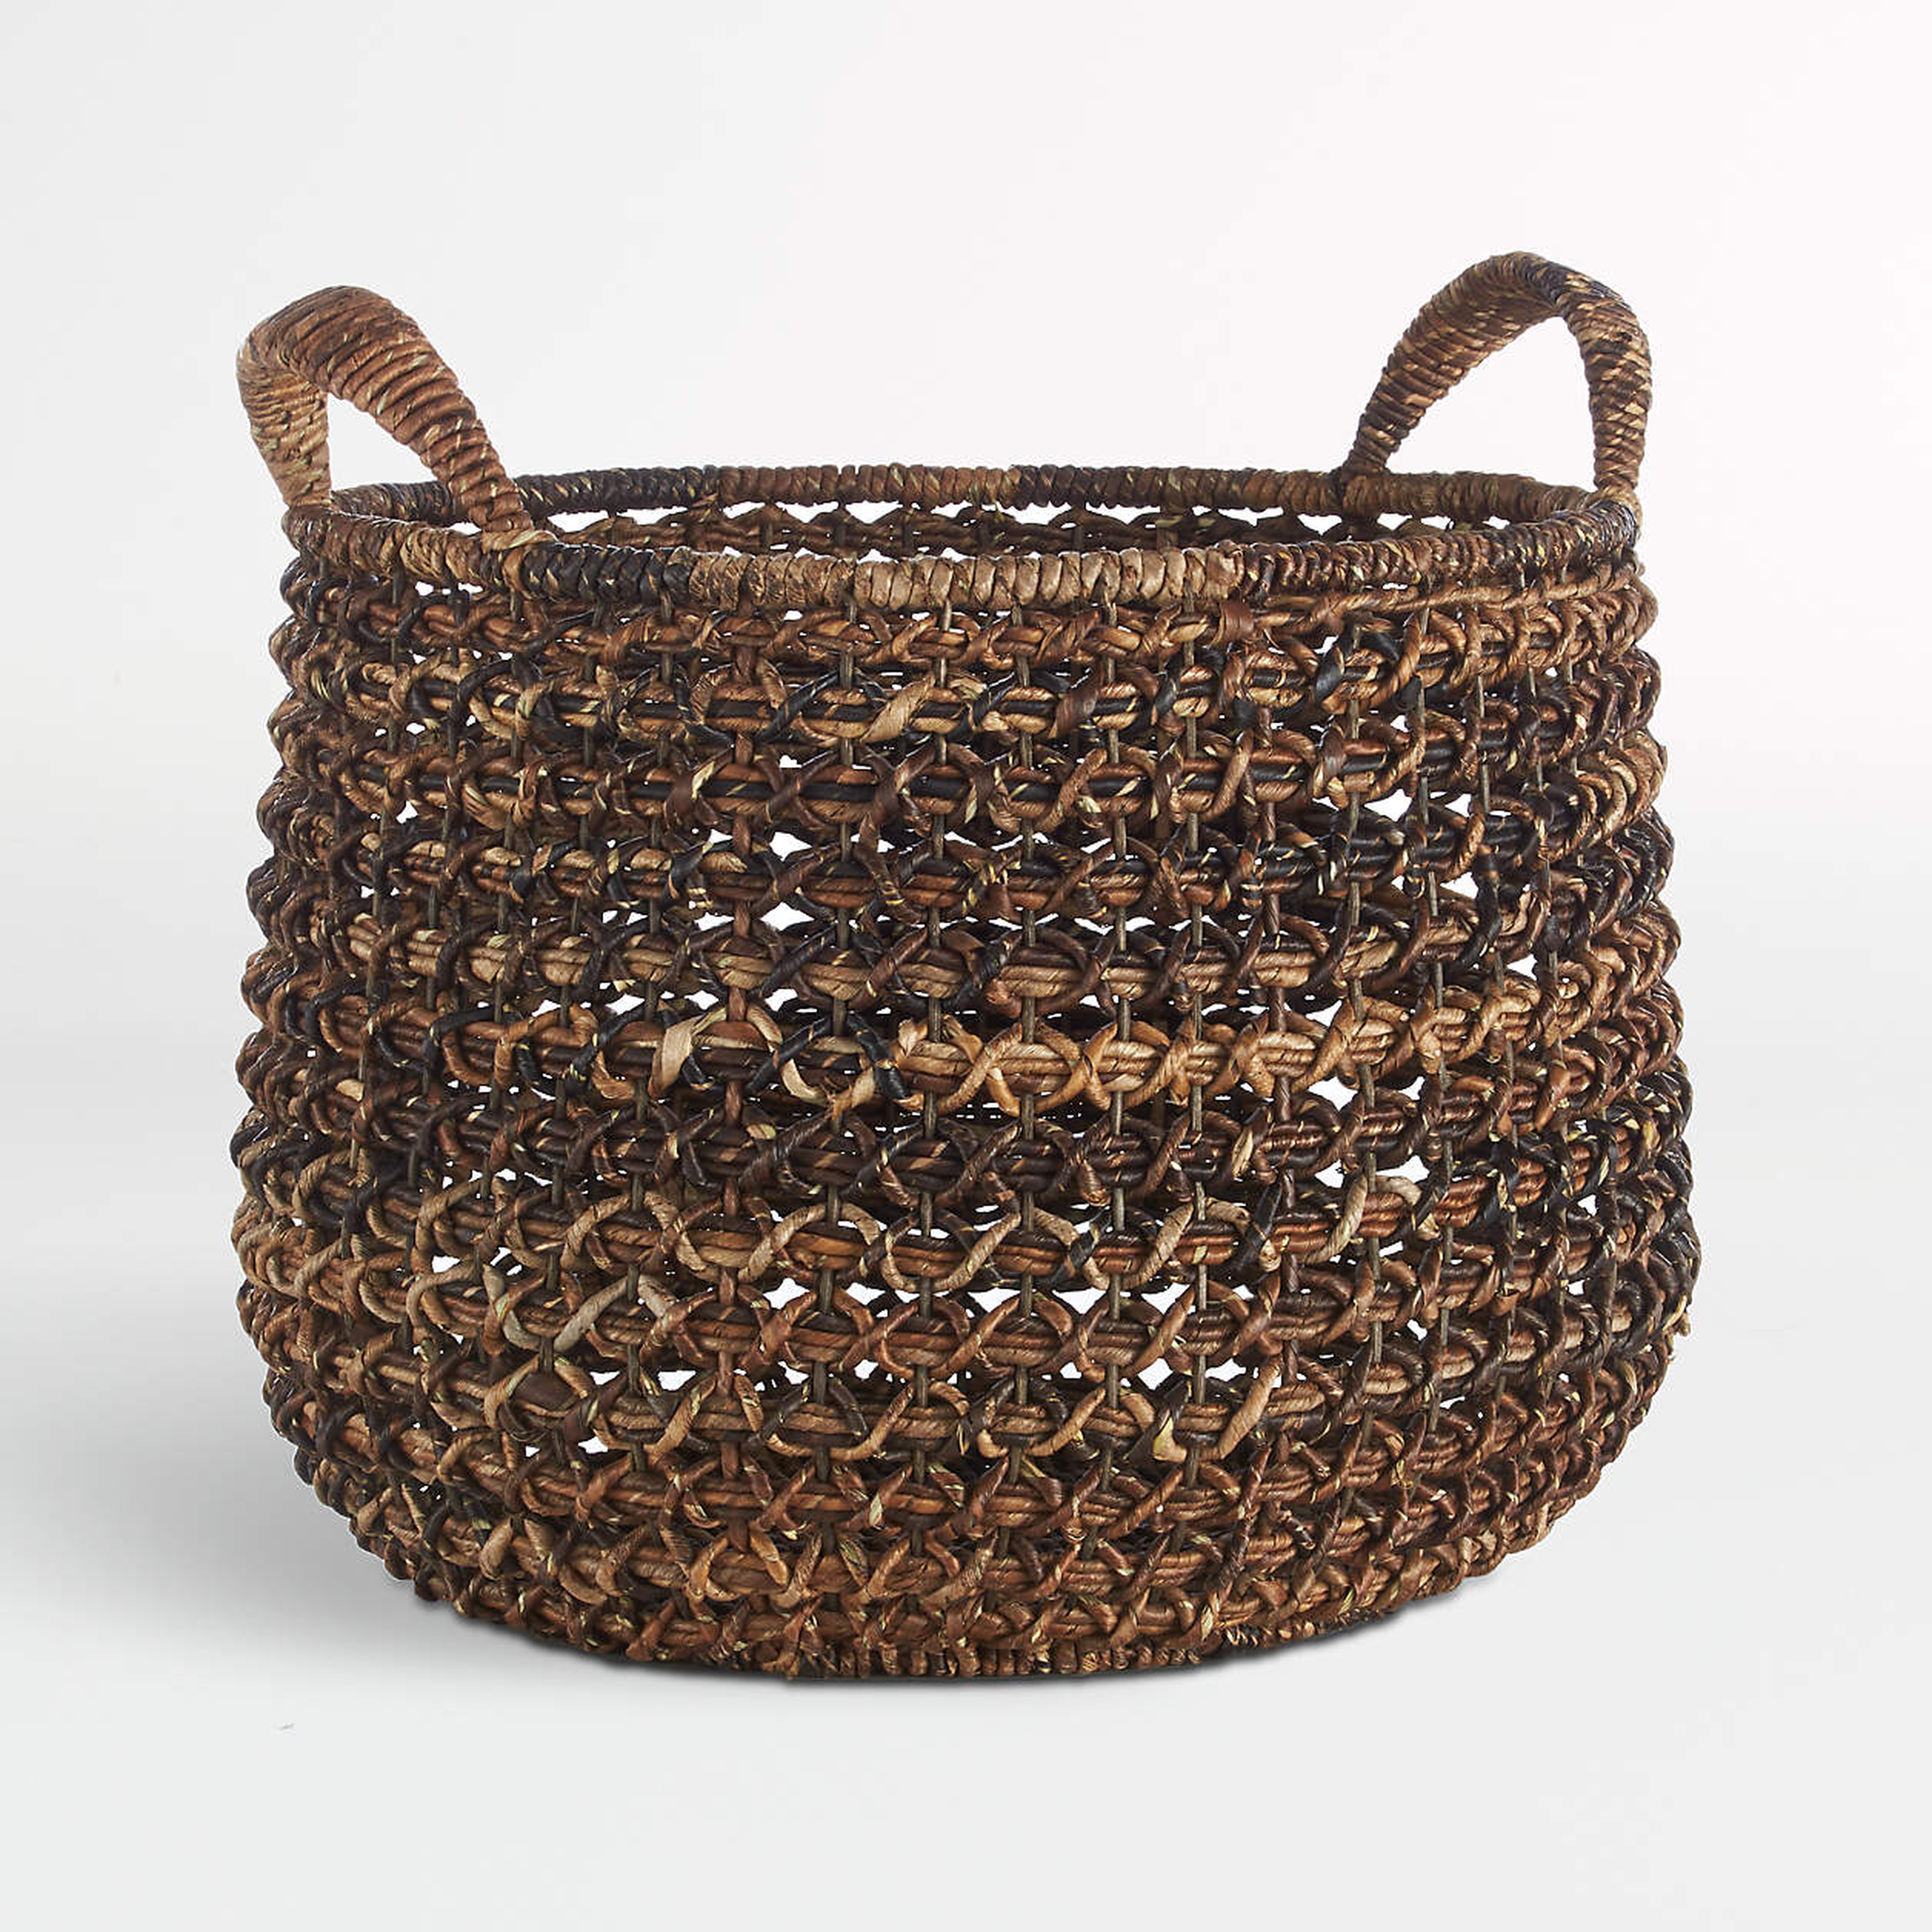 Zuzu Round Handwoven Basket - Crate and Barrel